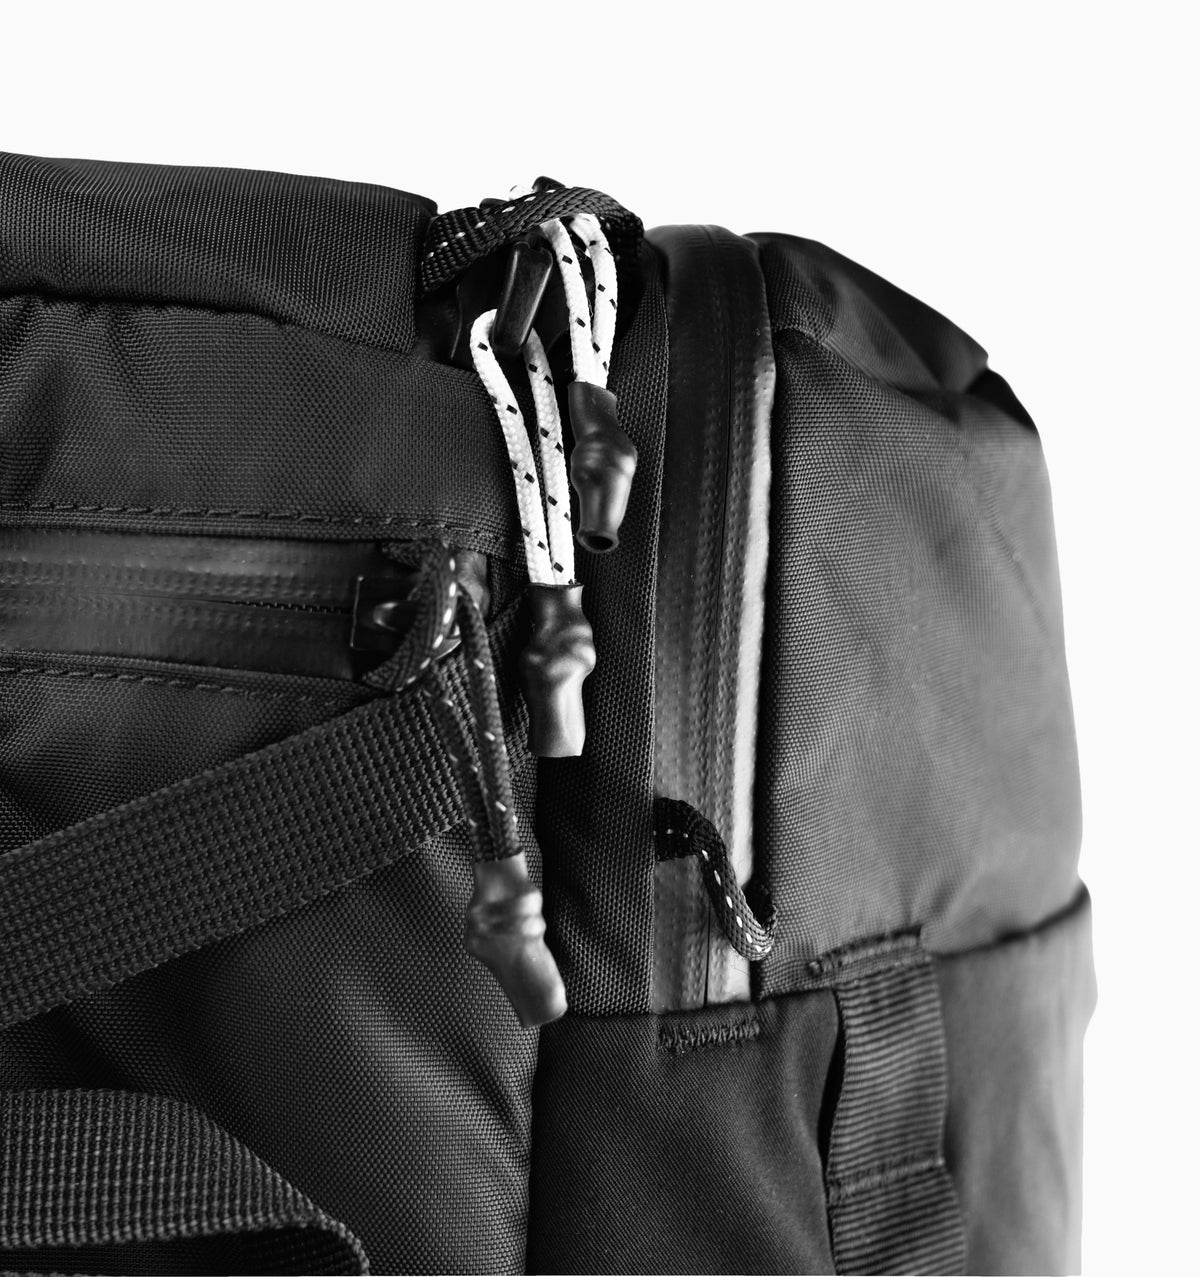 Matador 16" GlobeRider45 Travel Backpack 45L - Black